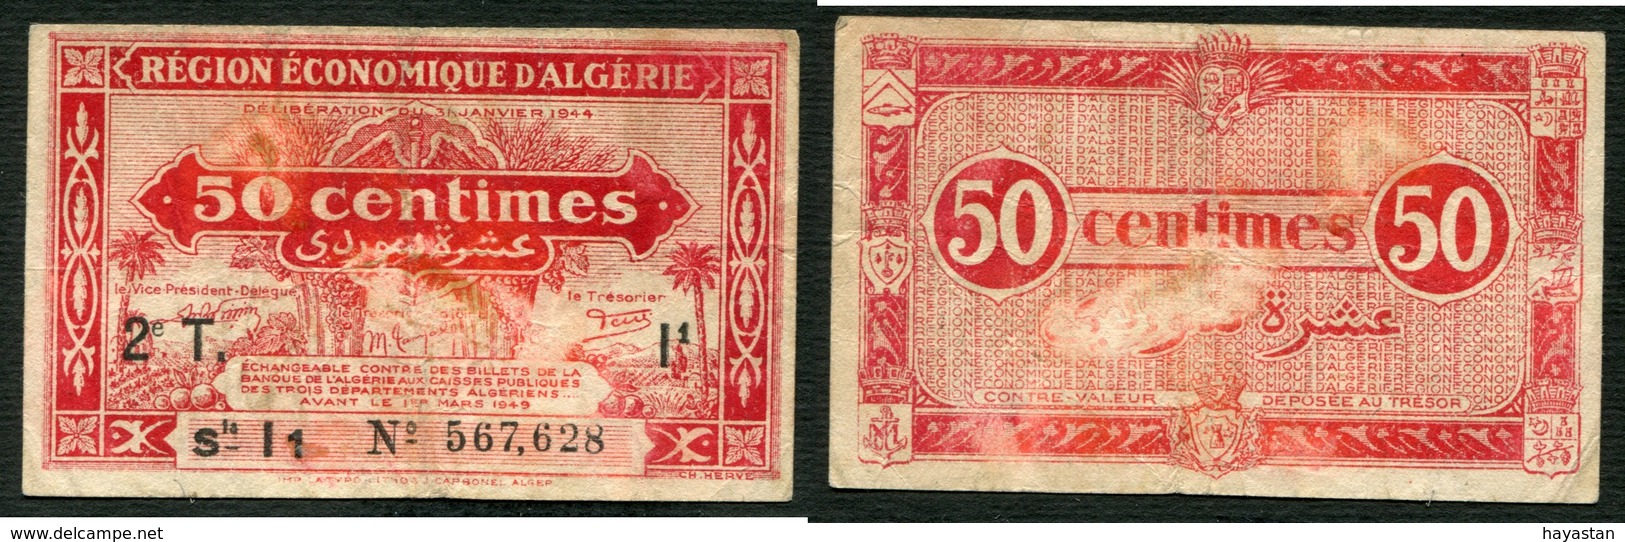 ALGERIE FRANCAISE - 50 CENTIMES 1944 - Algérie